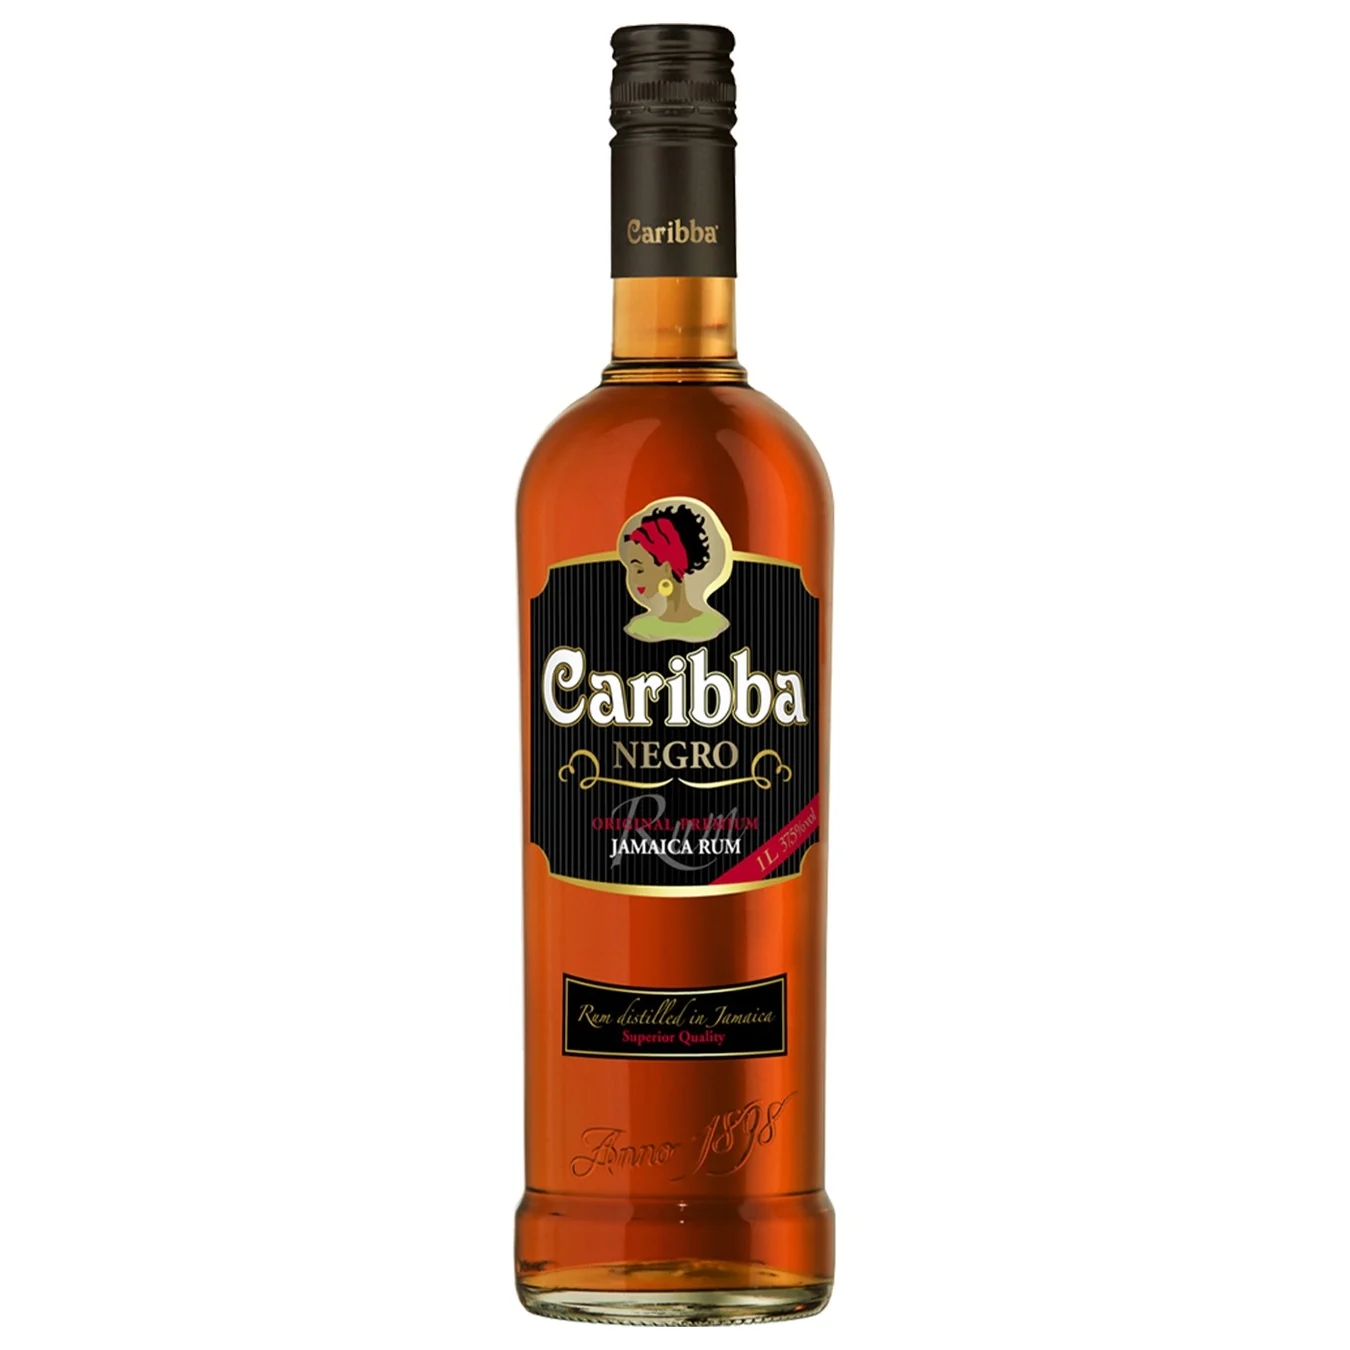 Caribba Negro Rum